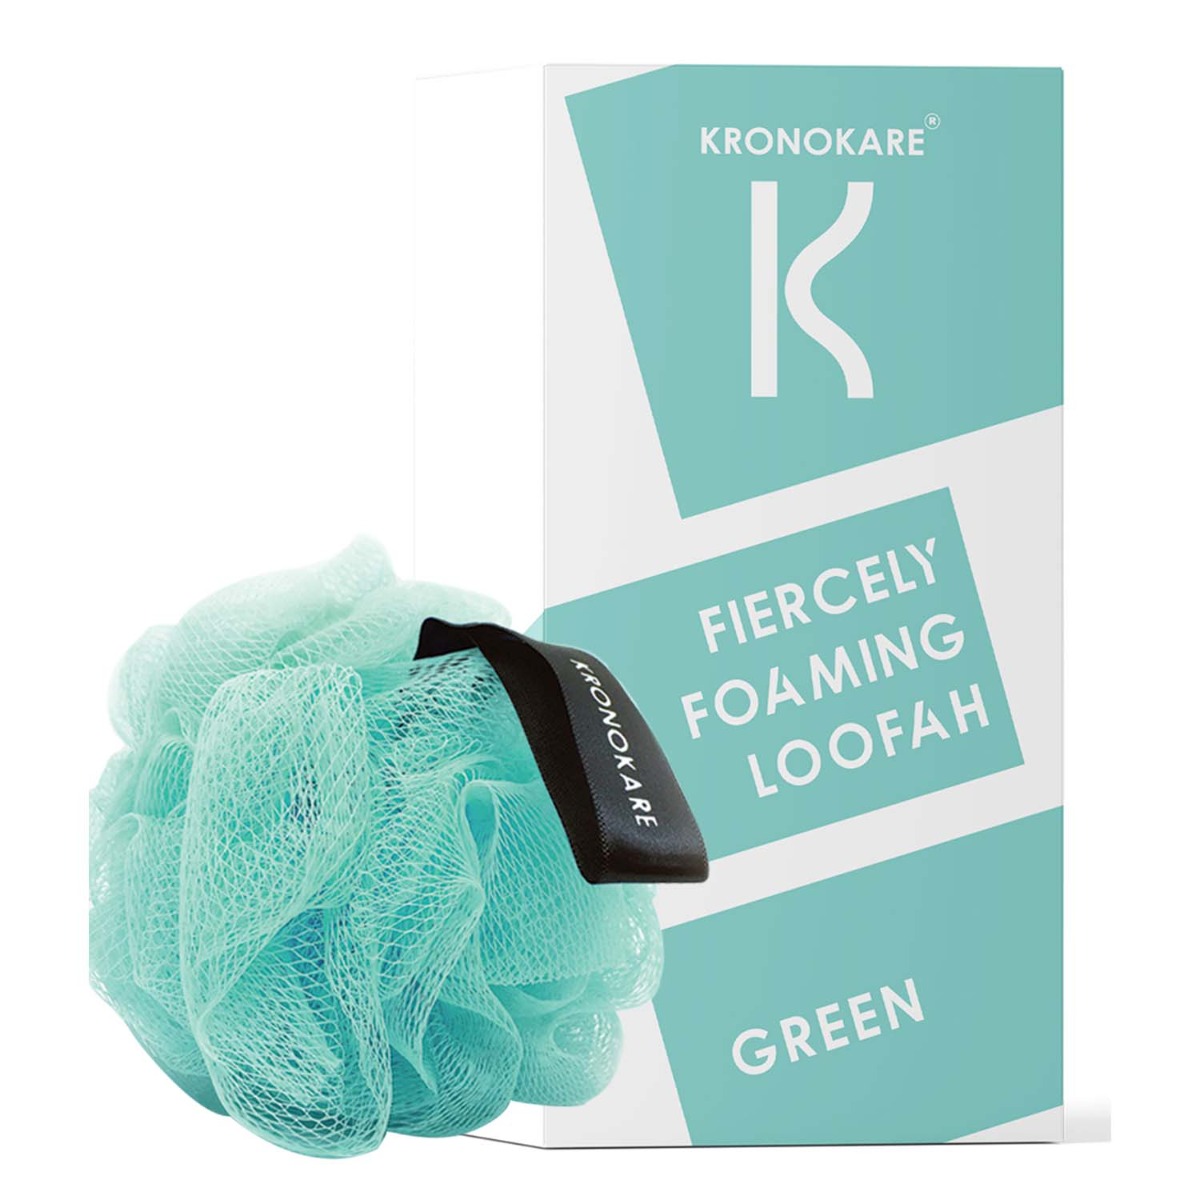 Kronokare Loofah - Fiercely Foaming - Green, 1Pc.